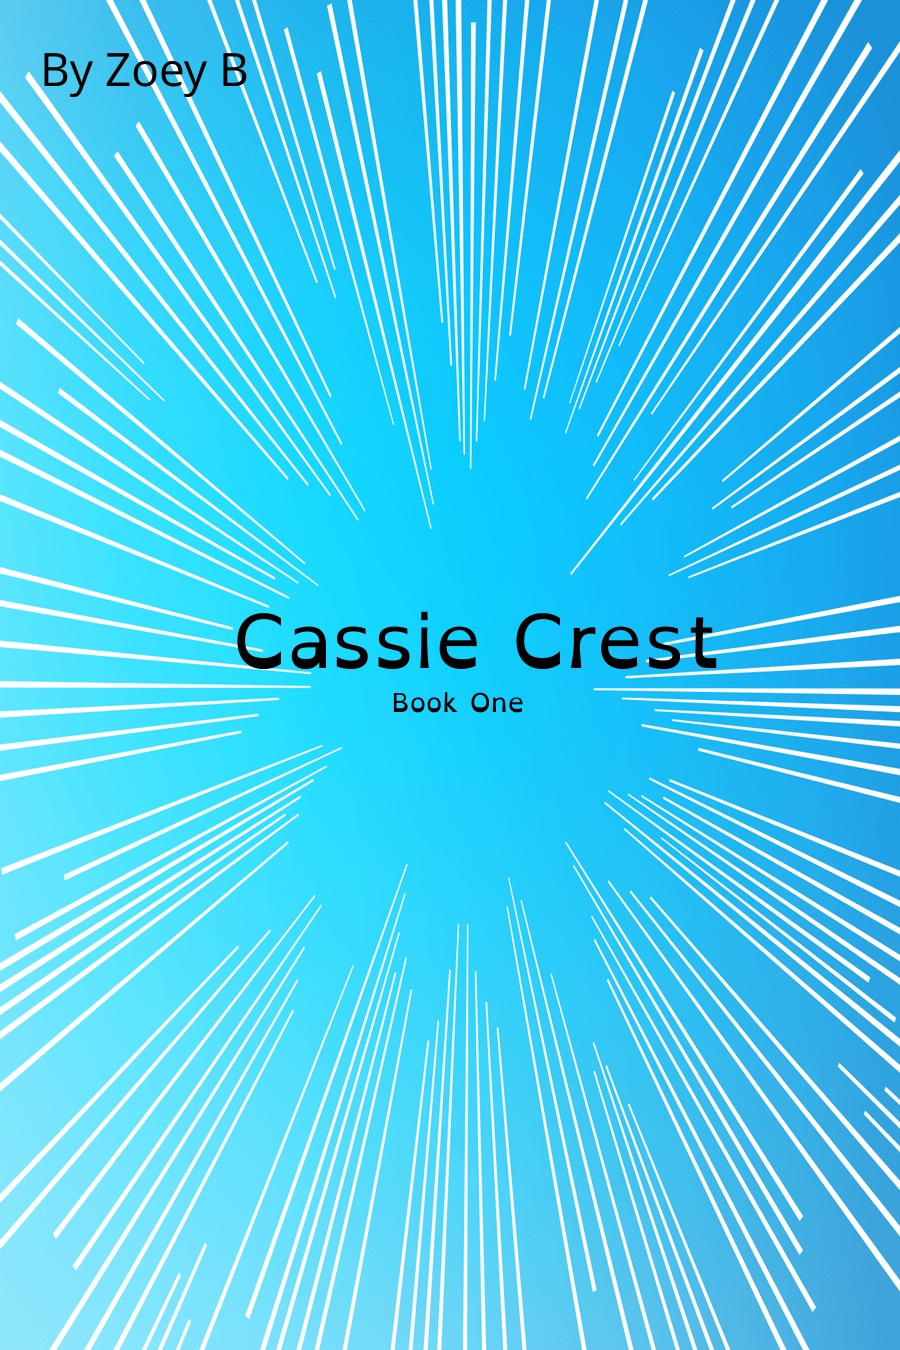 Cassie Crest-book 1 by Zoey B